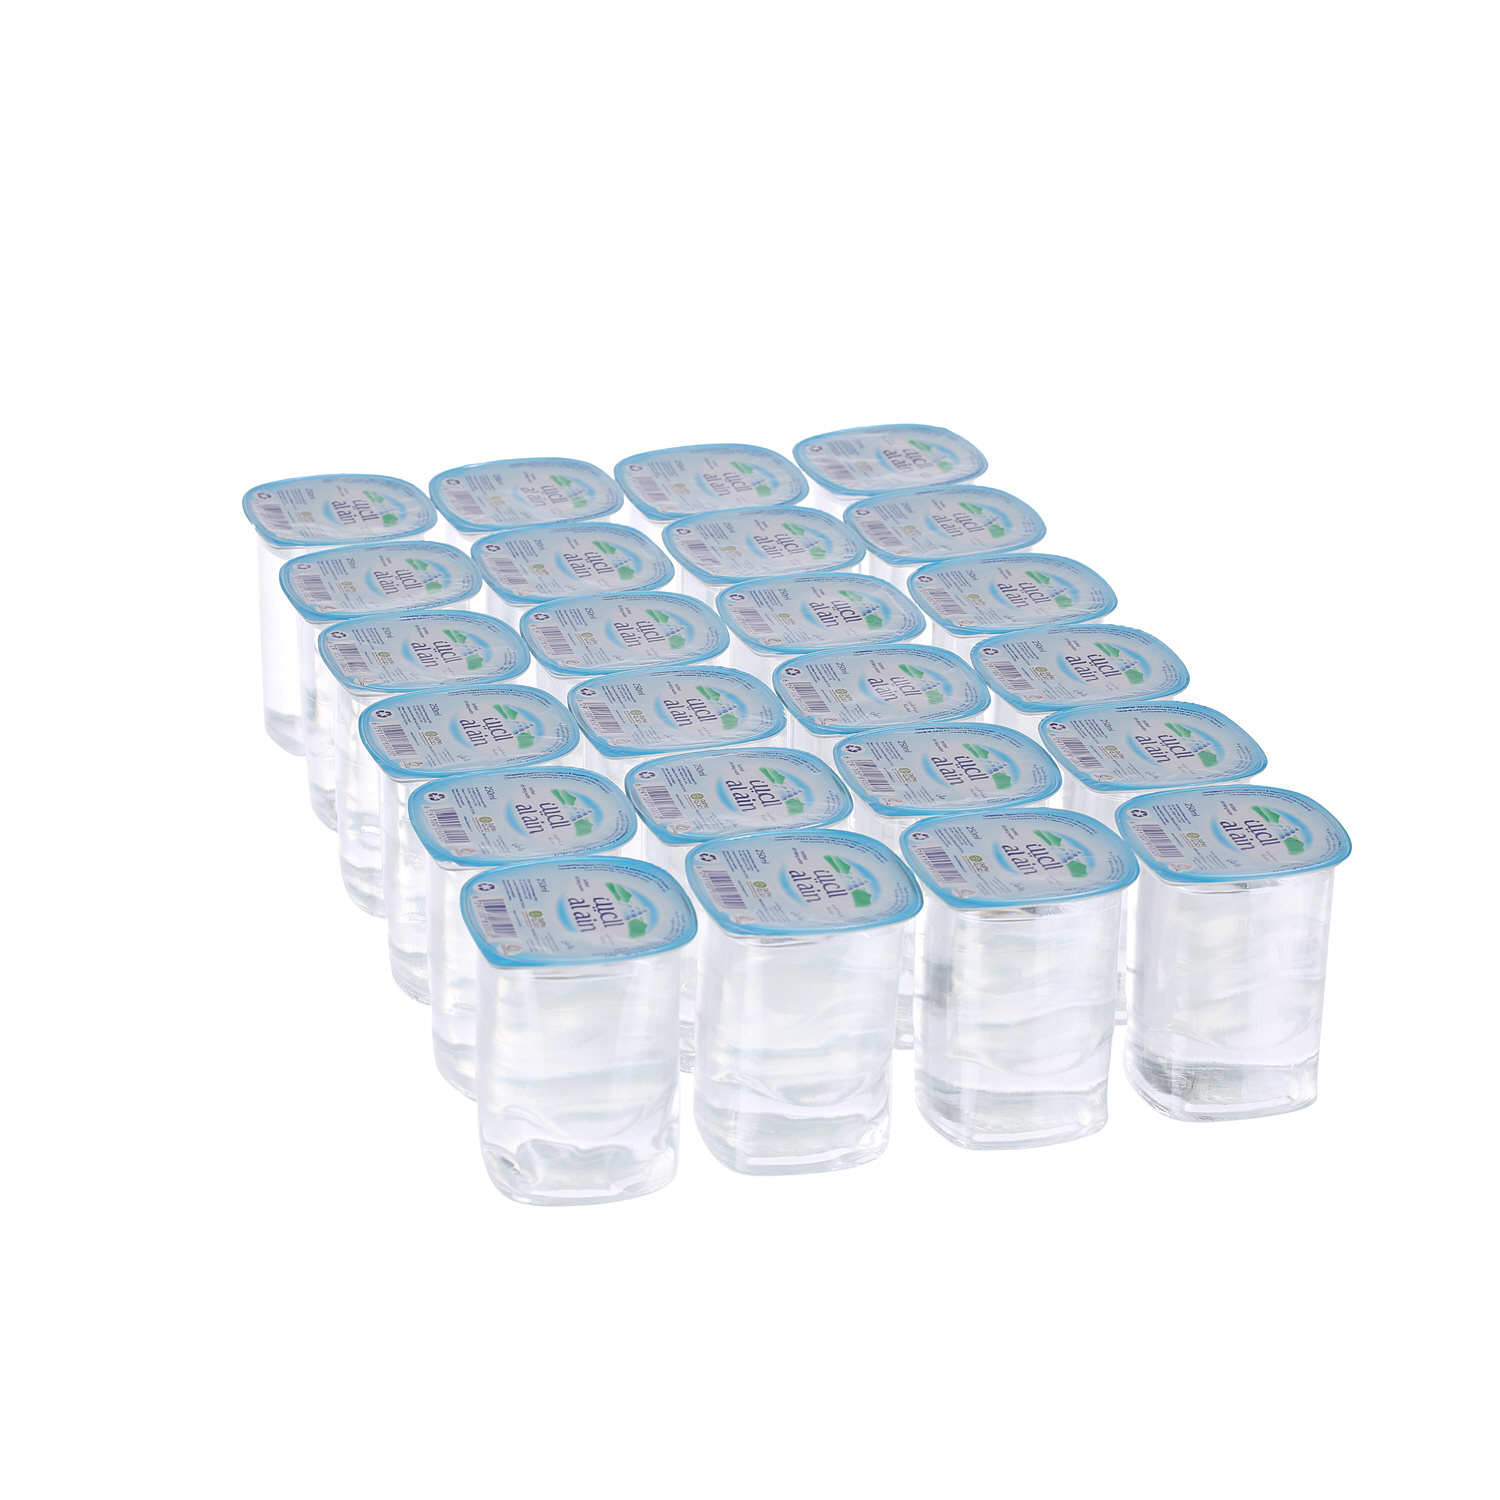 Al Ain Water Cup 250 ml × 24 Pack